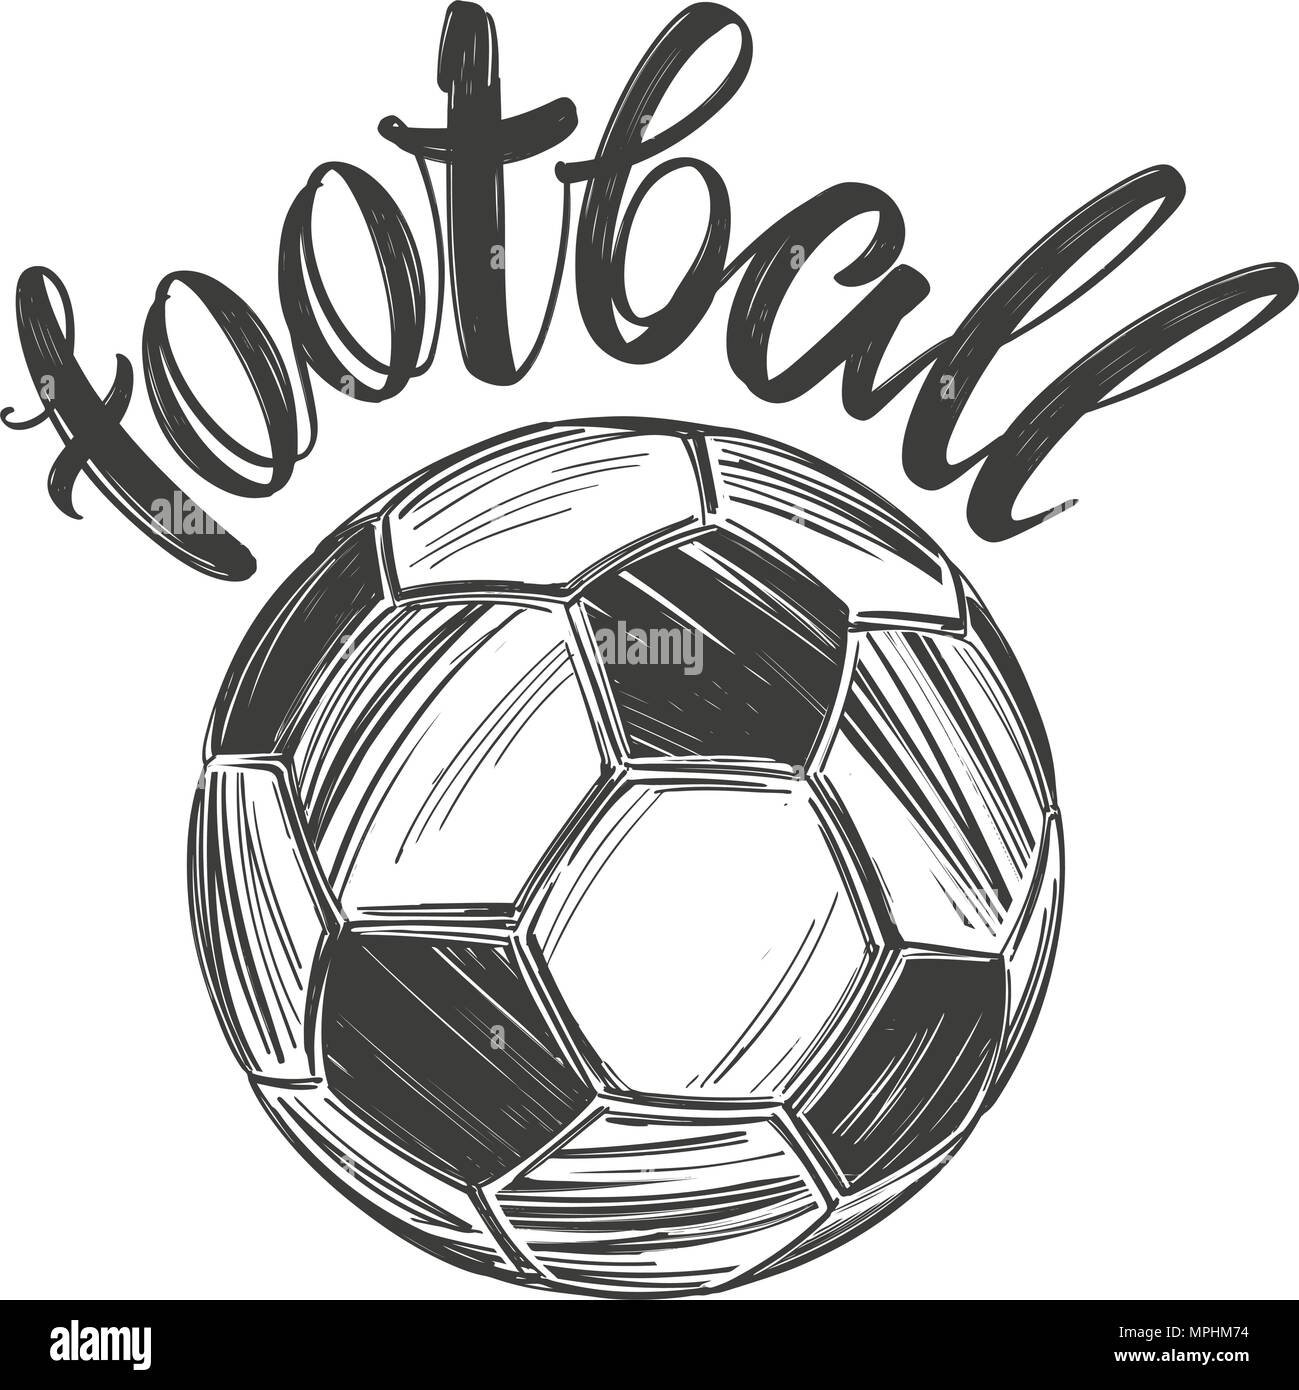 Football, ballon de football, jeu de sport, texte calligraphié, signe de l'emblème dessiné à la main, croquis d'illustration vectorielle Illustration de Vecteur